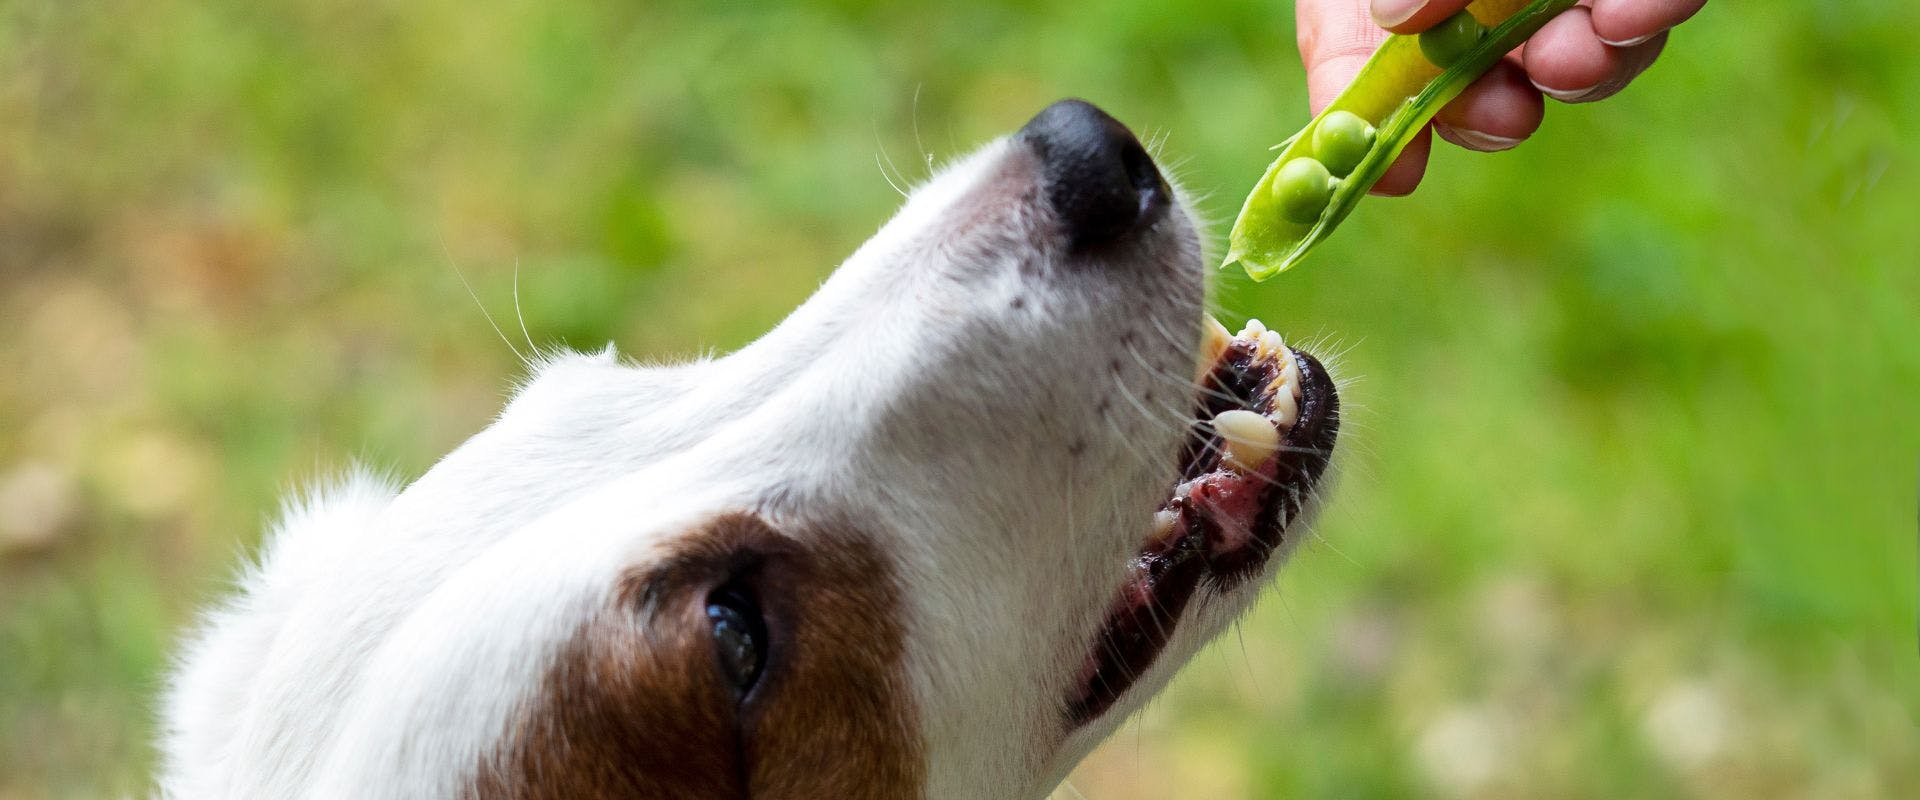 Terrier dog being fed garden peas